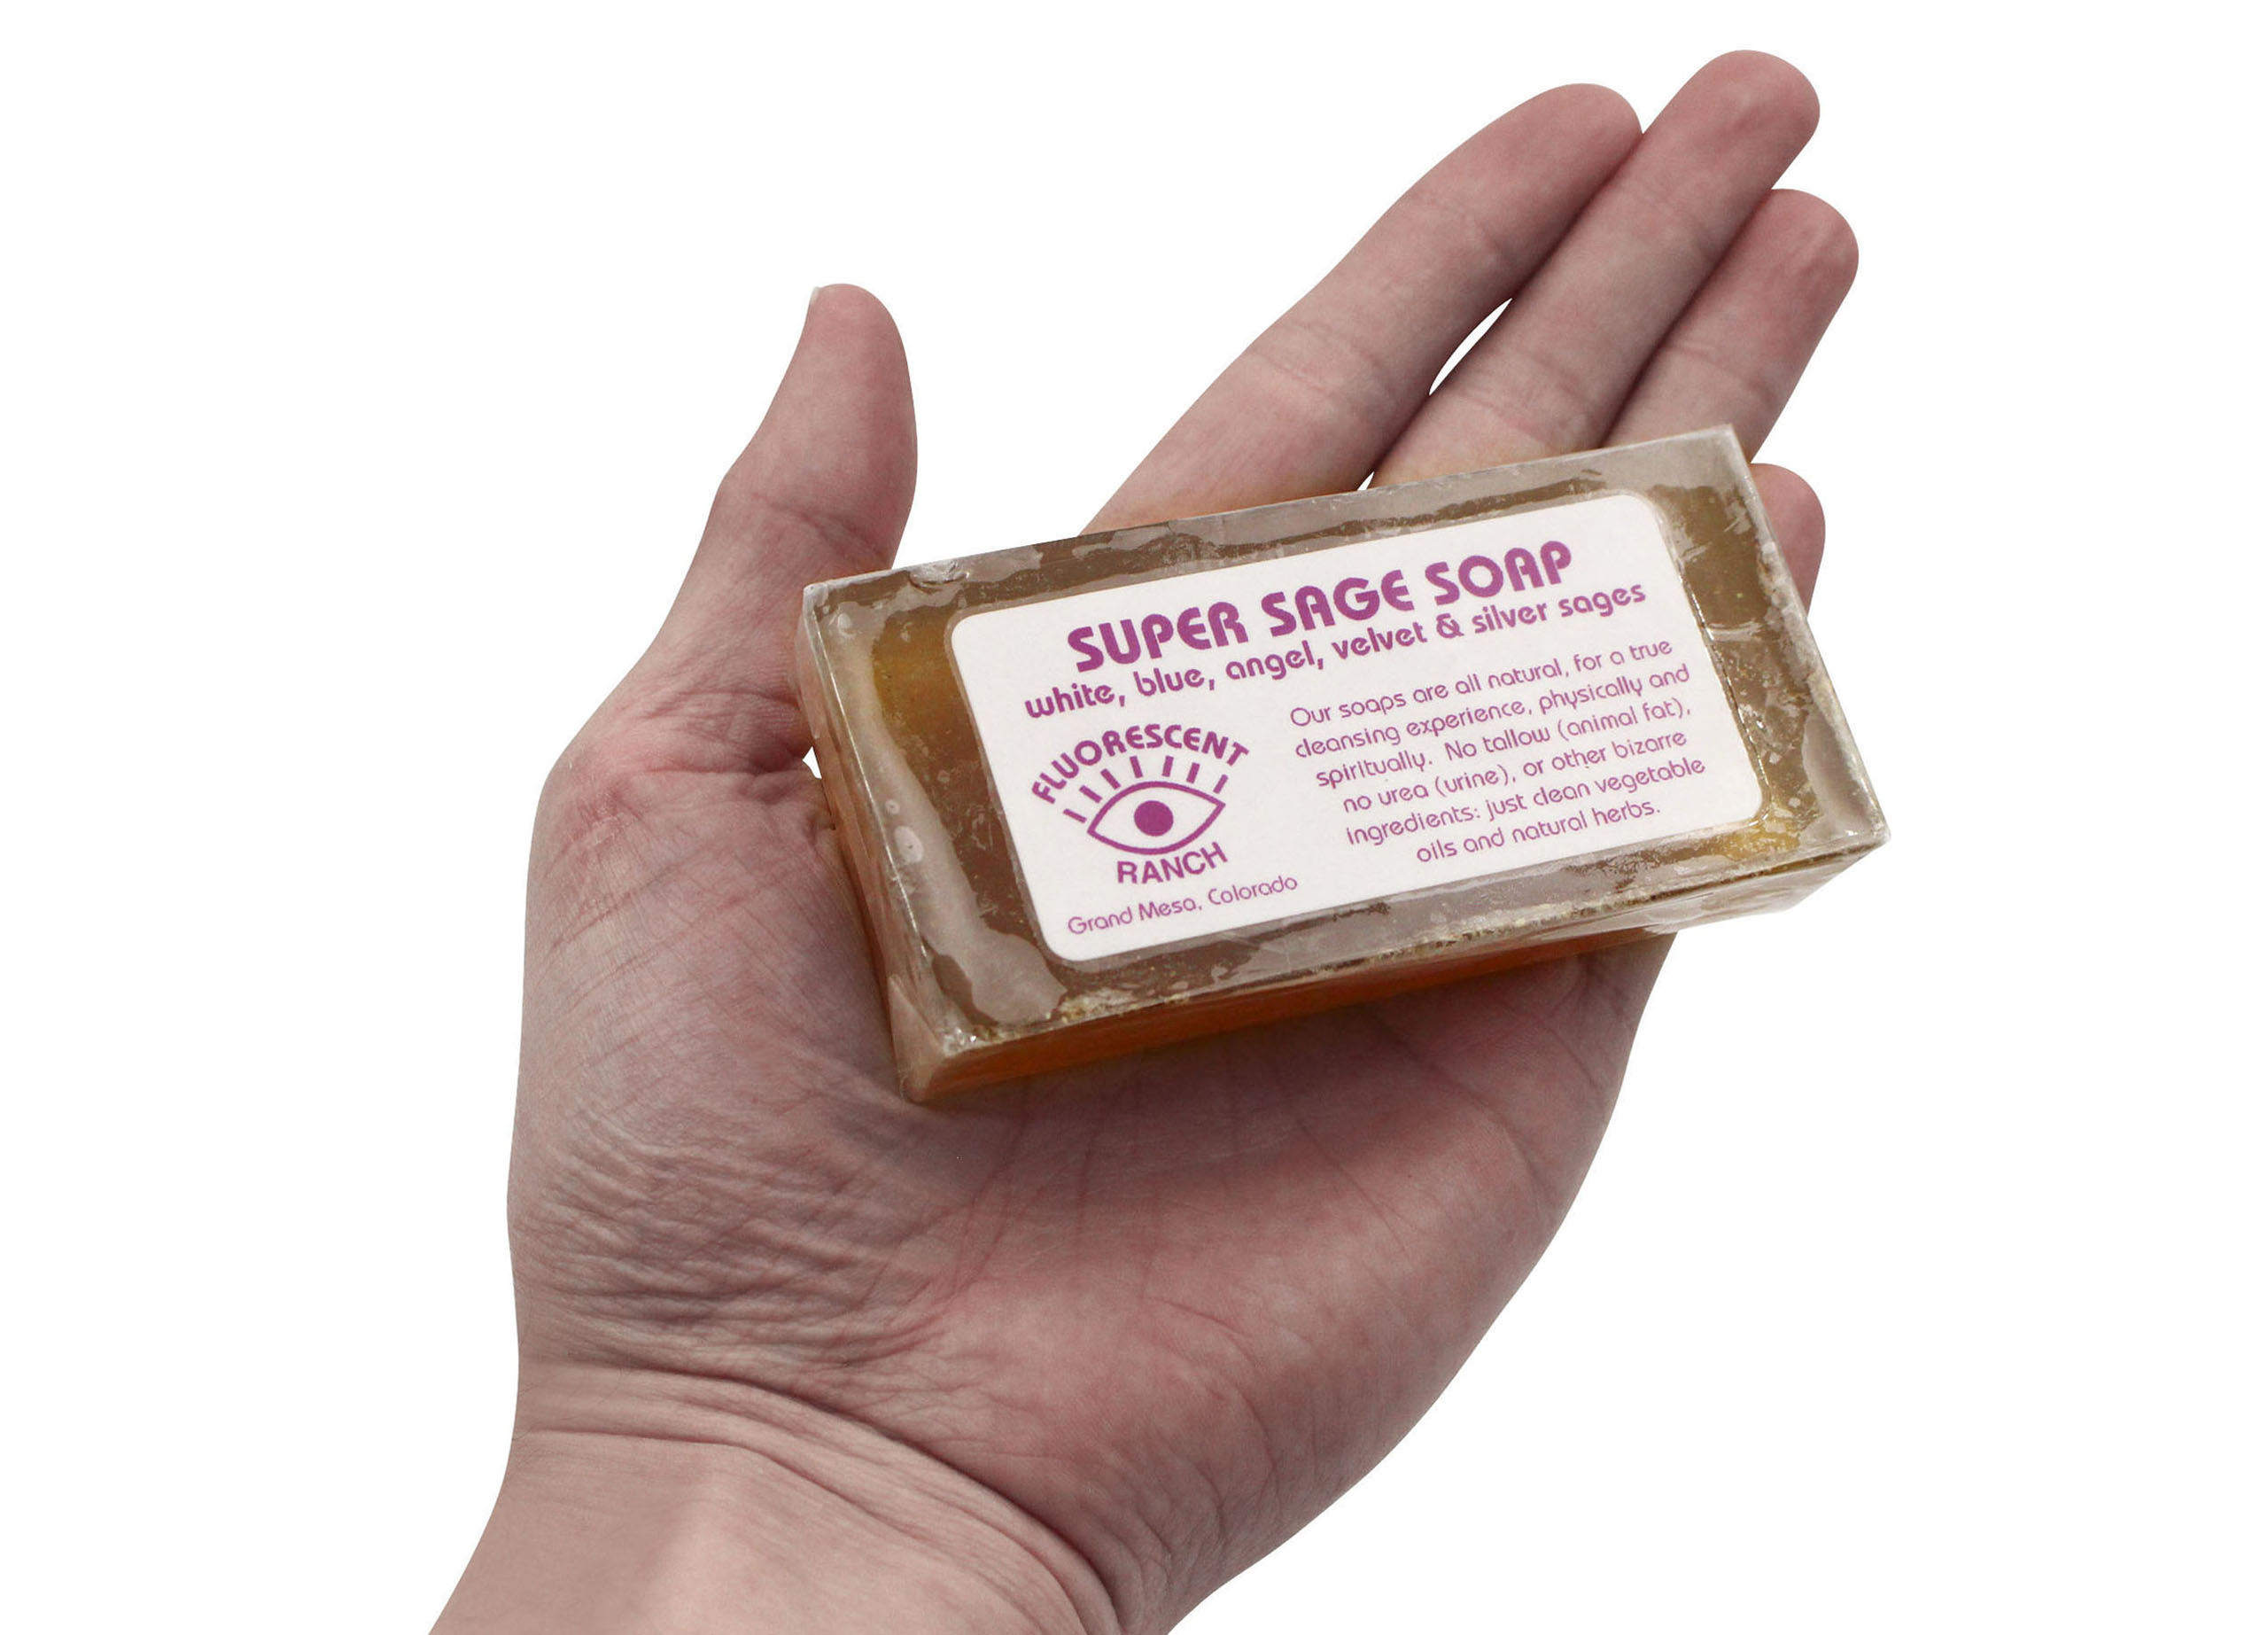 Super Sage Soap - Crystal Dreams